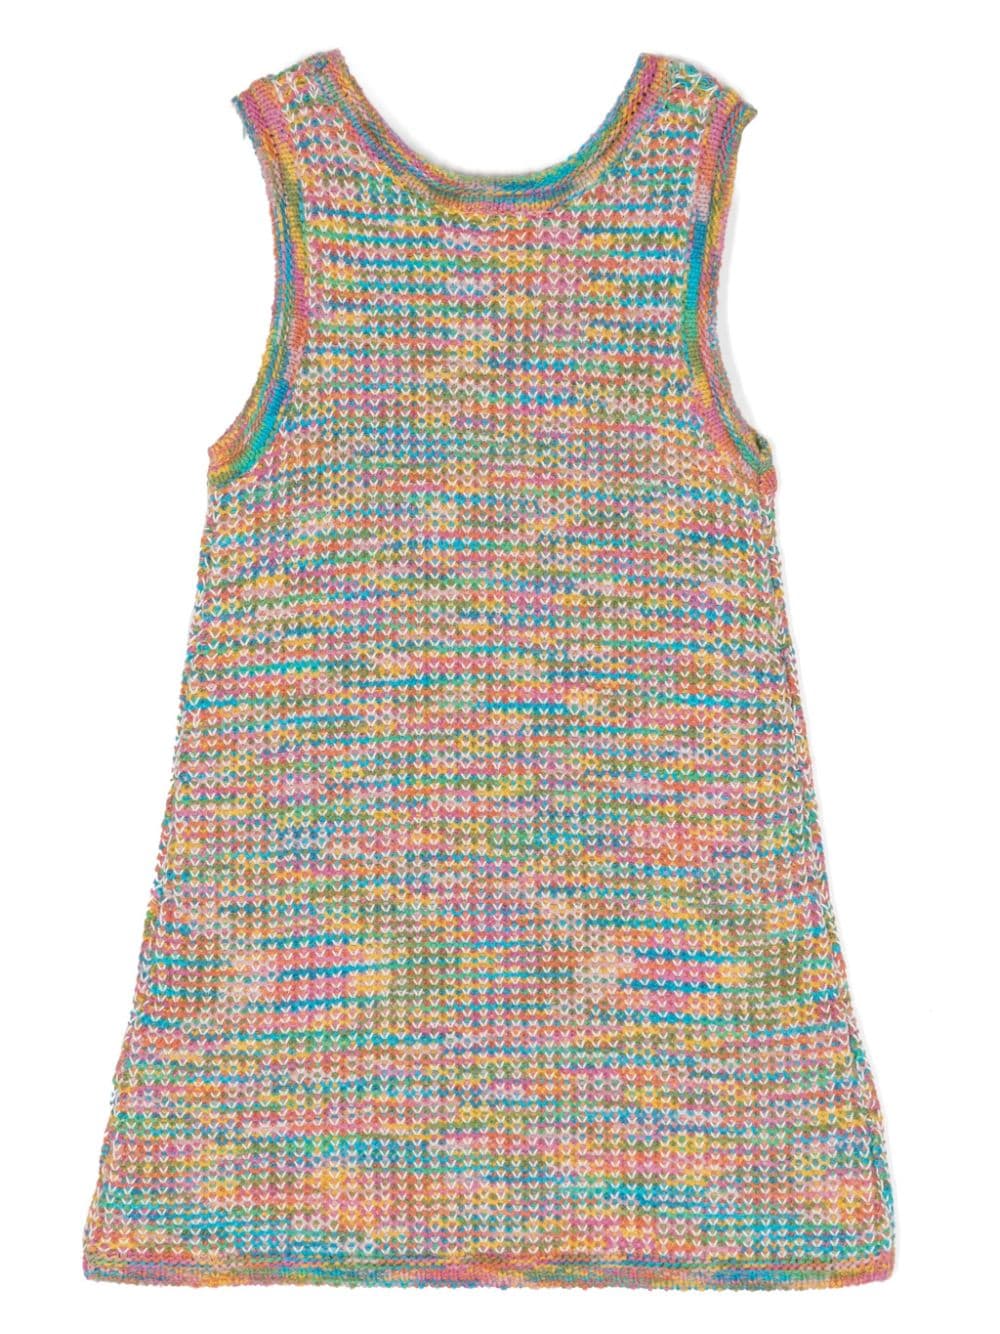 August Textured Knit Dress